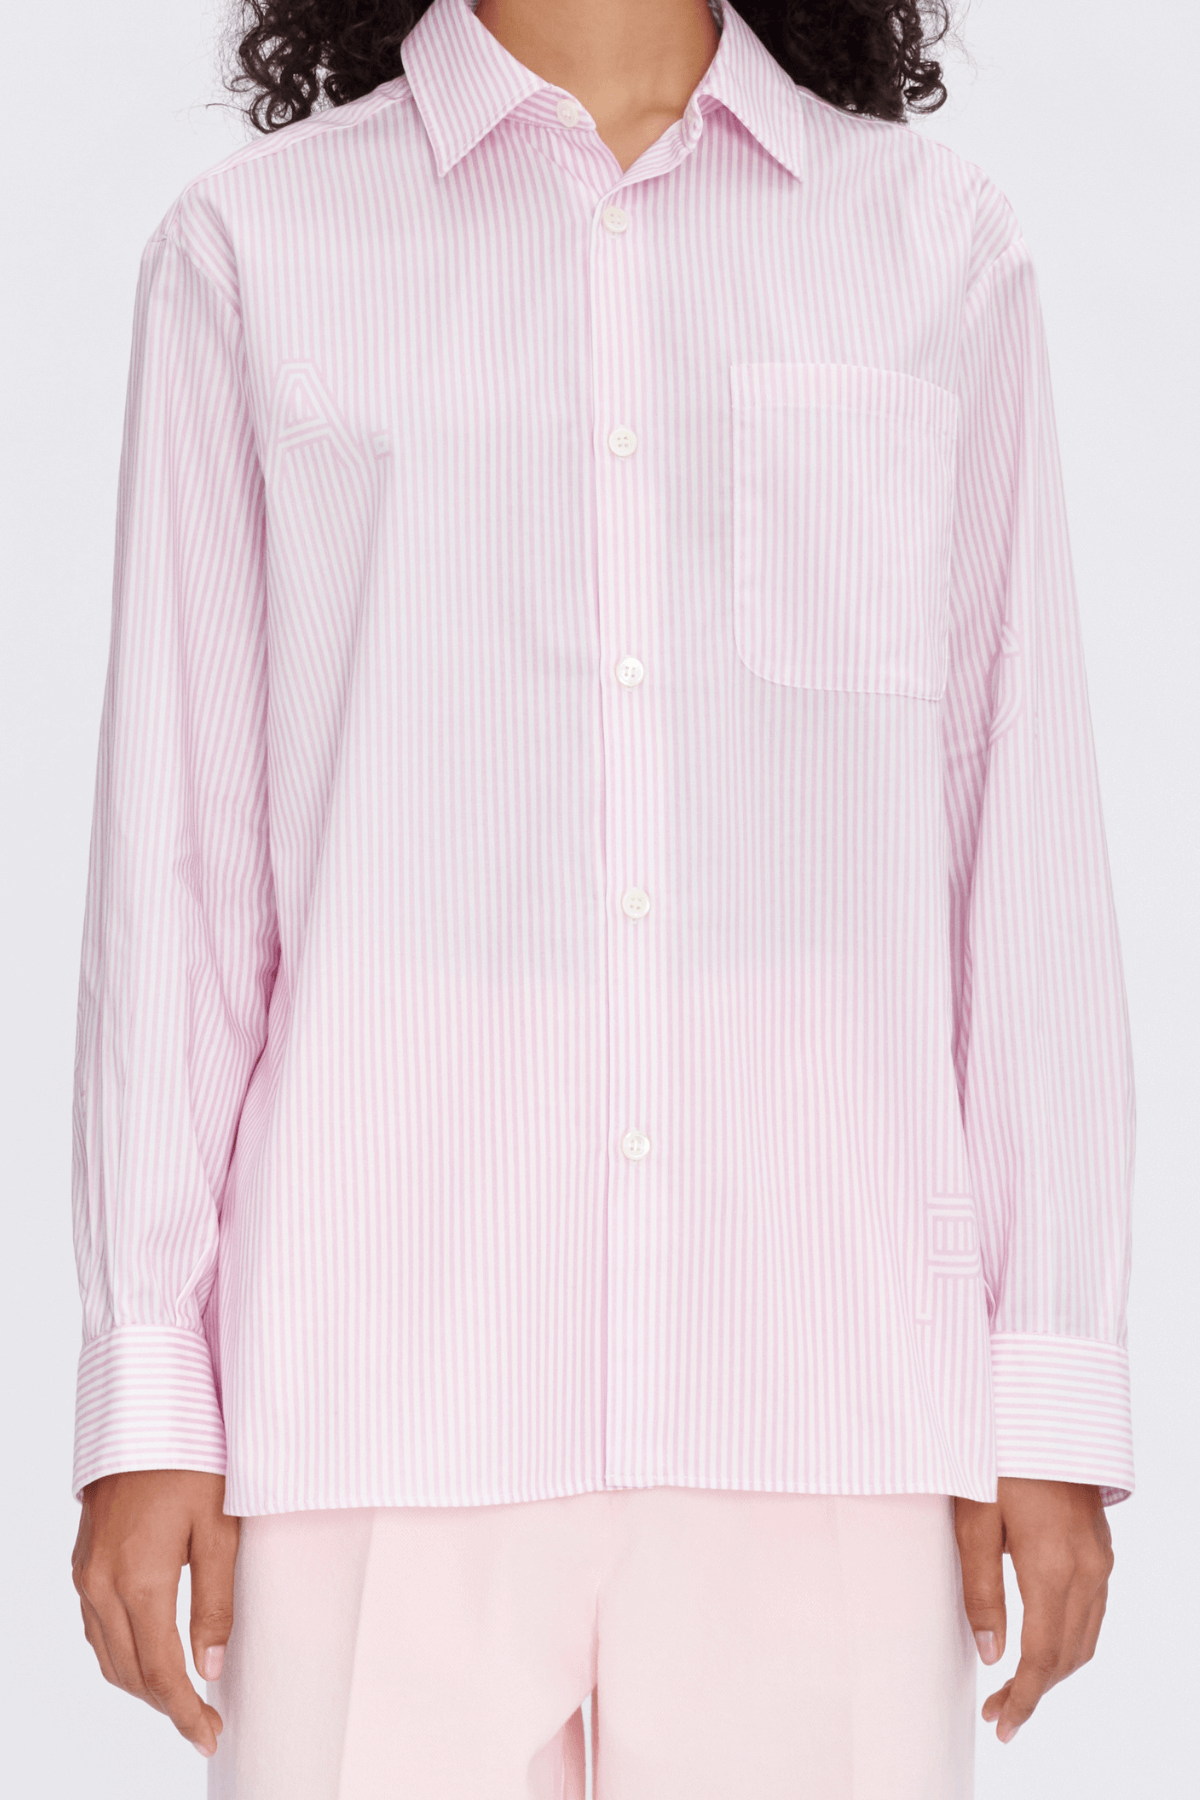 A.P.C. Sela Striped Logo Shirt - Pink